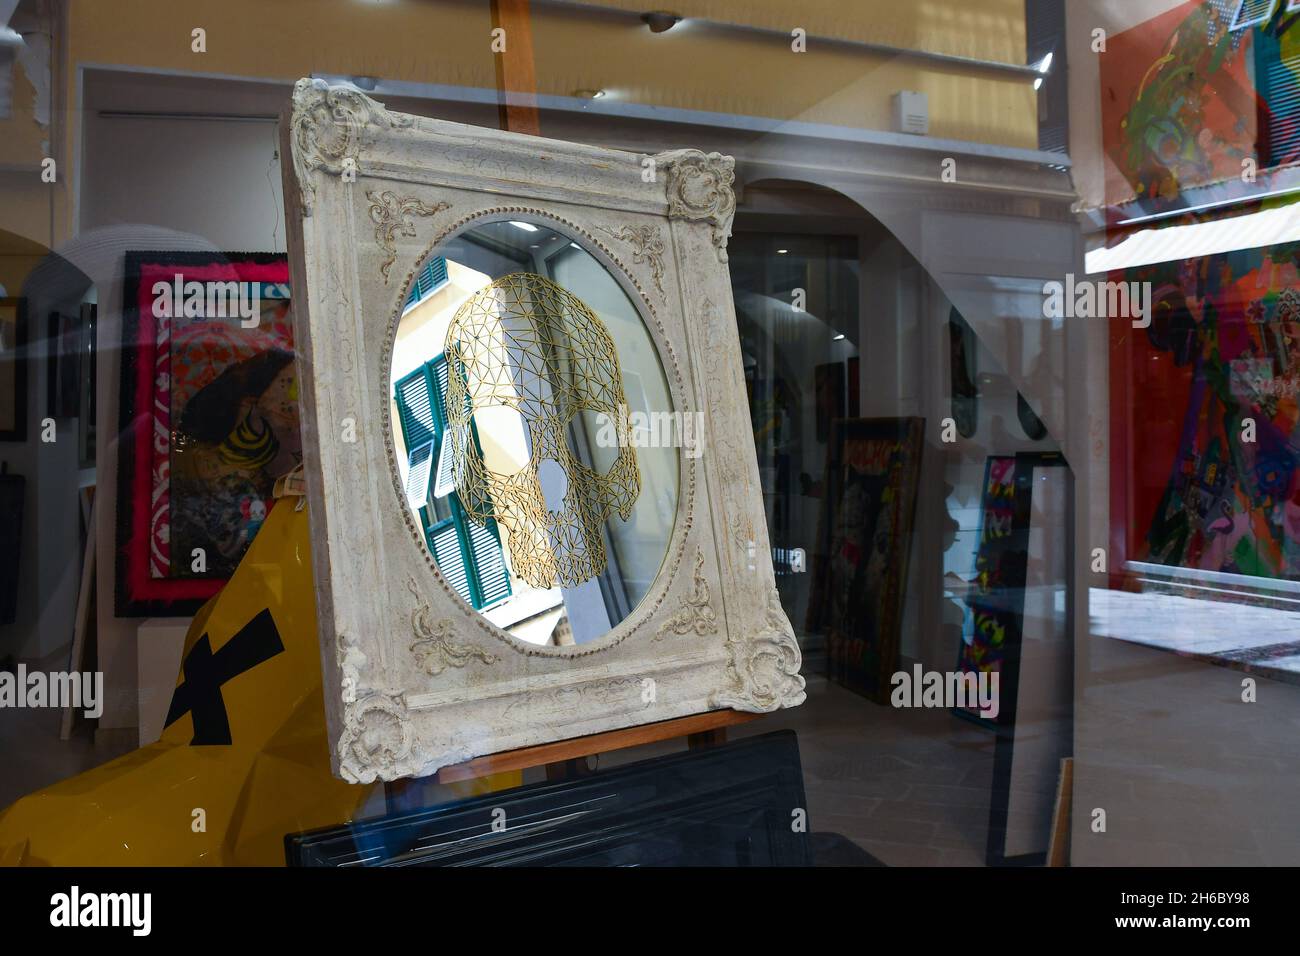 Ein künstlerischer Spiegel, der im Fenster der Kunstgalerie Arte è Kaos im historischen Zentrum von Alassio, Savona, Ligurien, Italien, ausgestellt ist Stockfoto